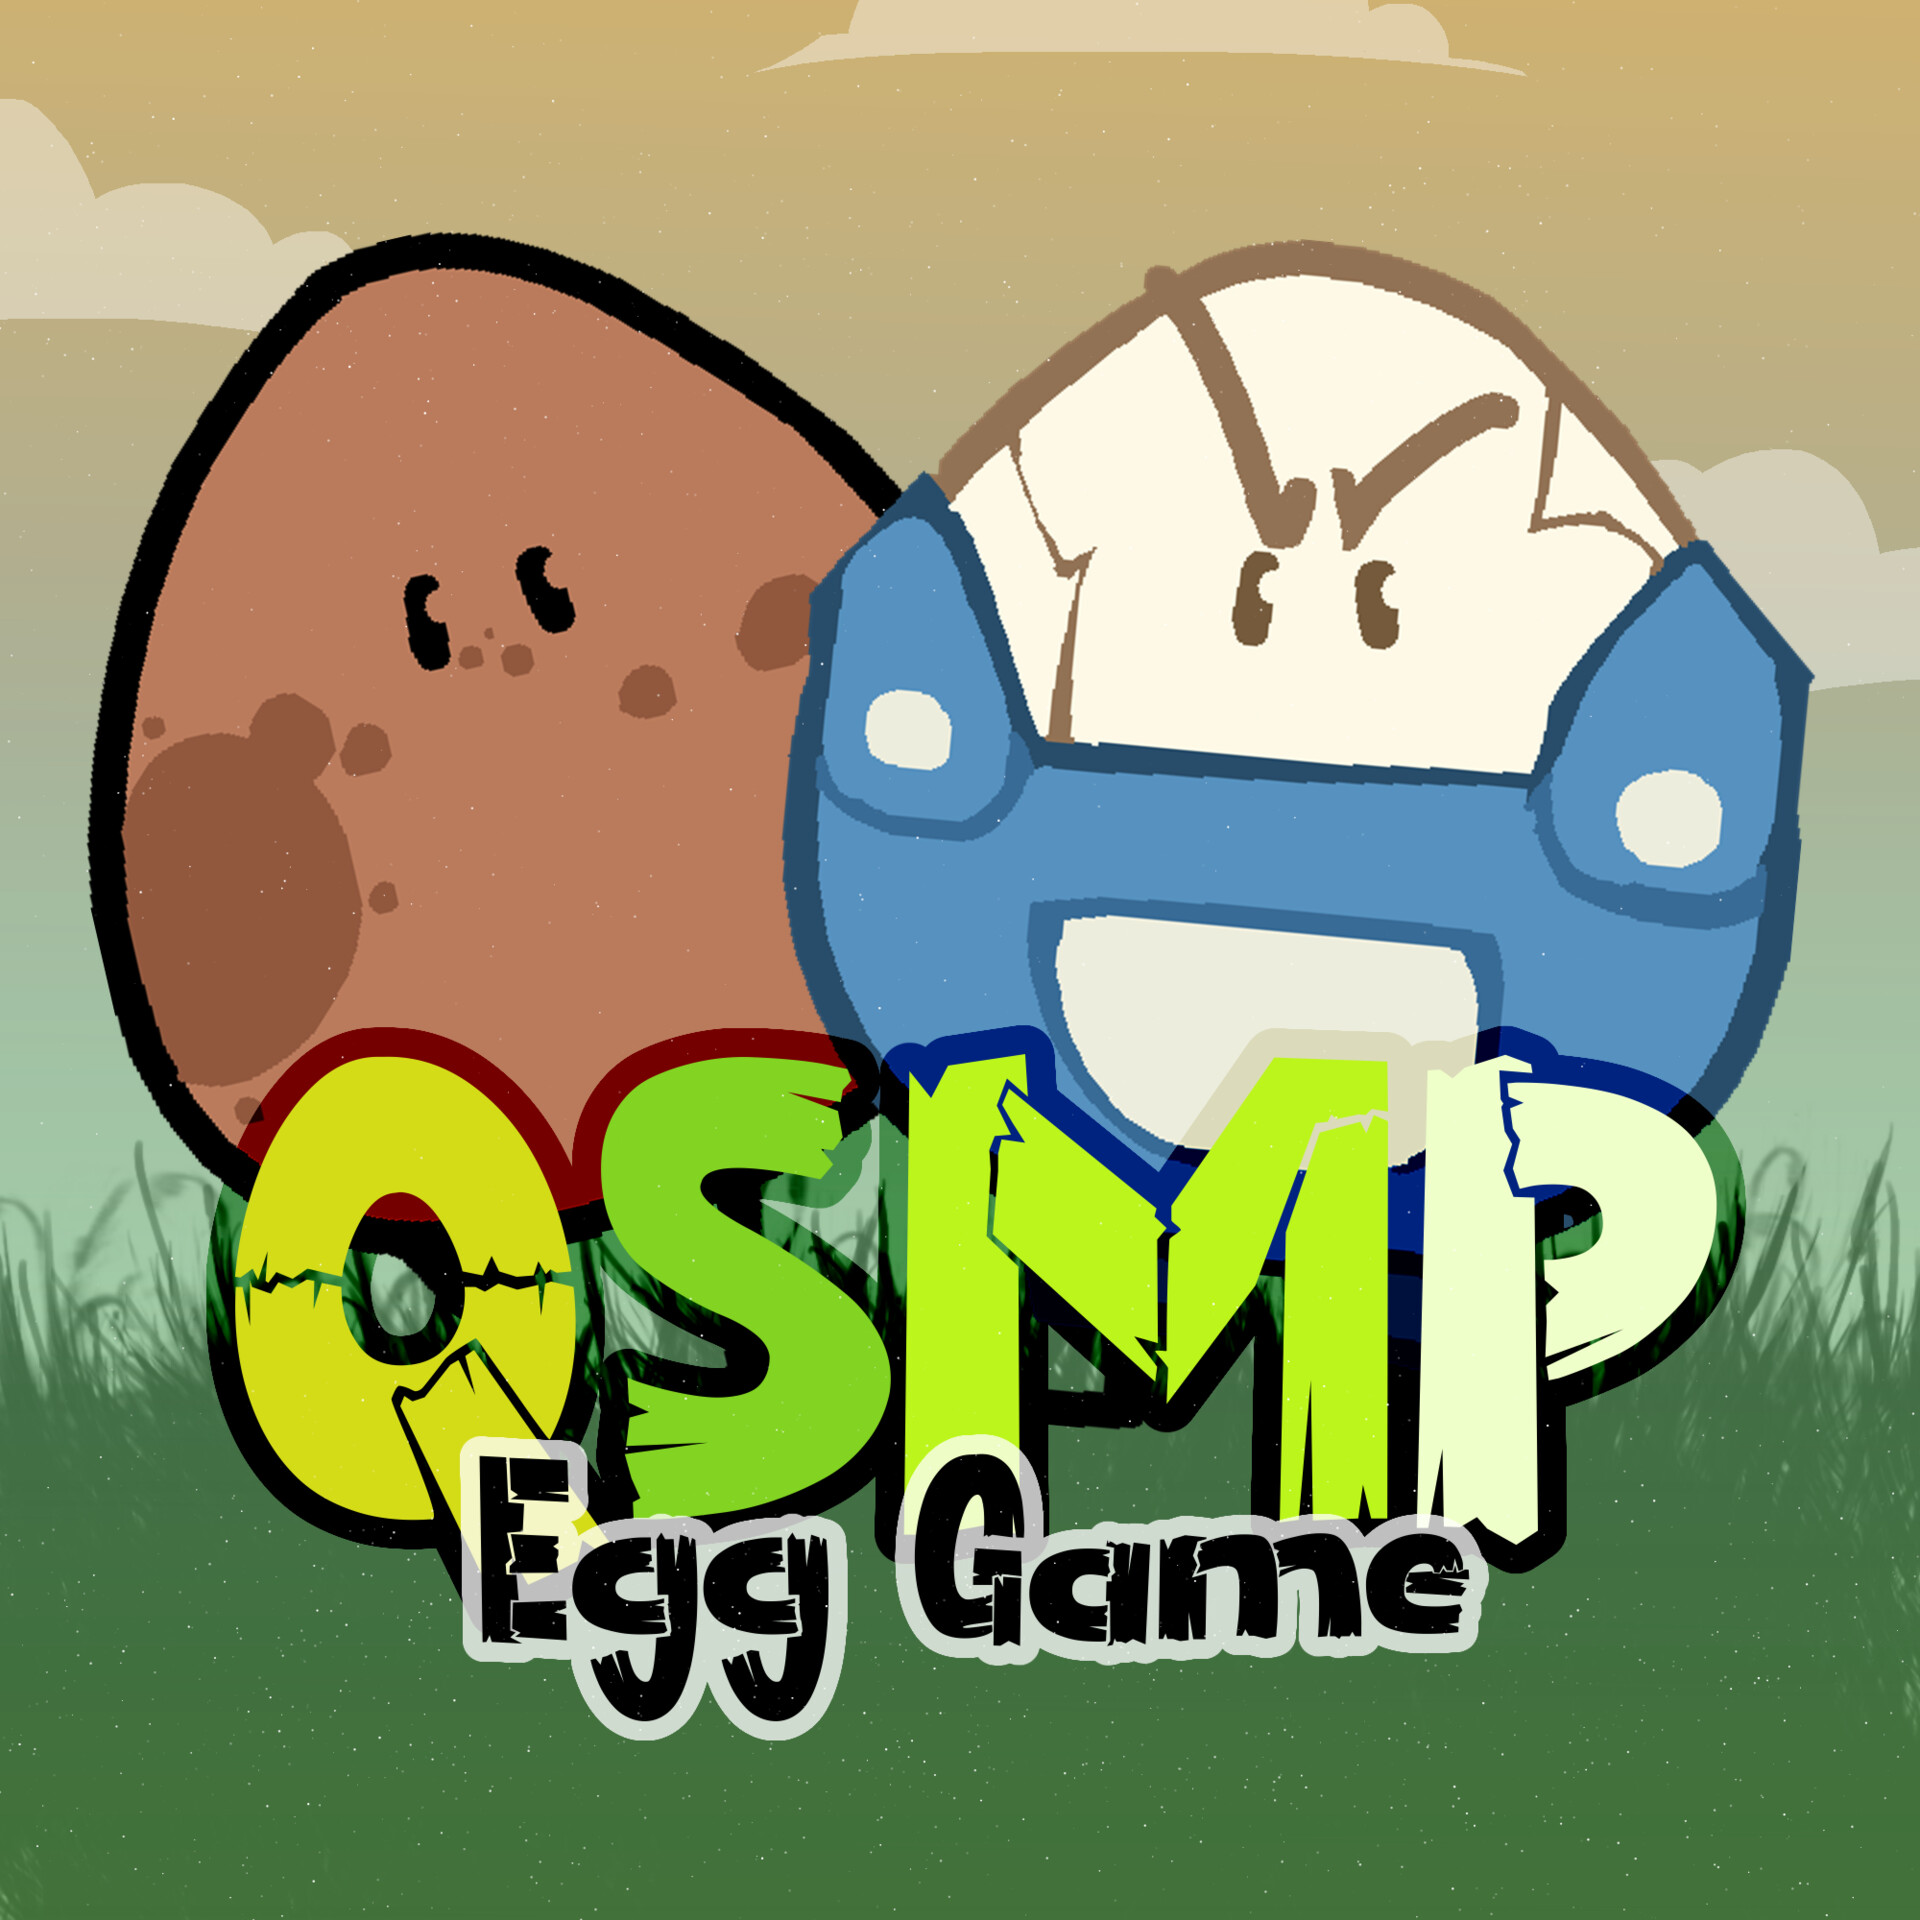 Qsmp eggs : r/Qsmp